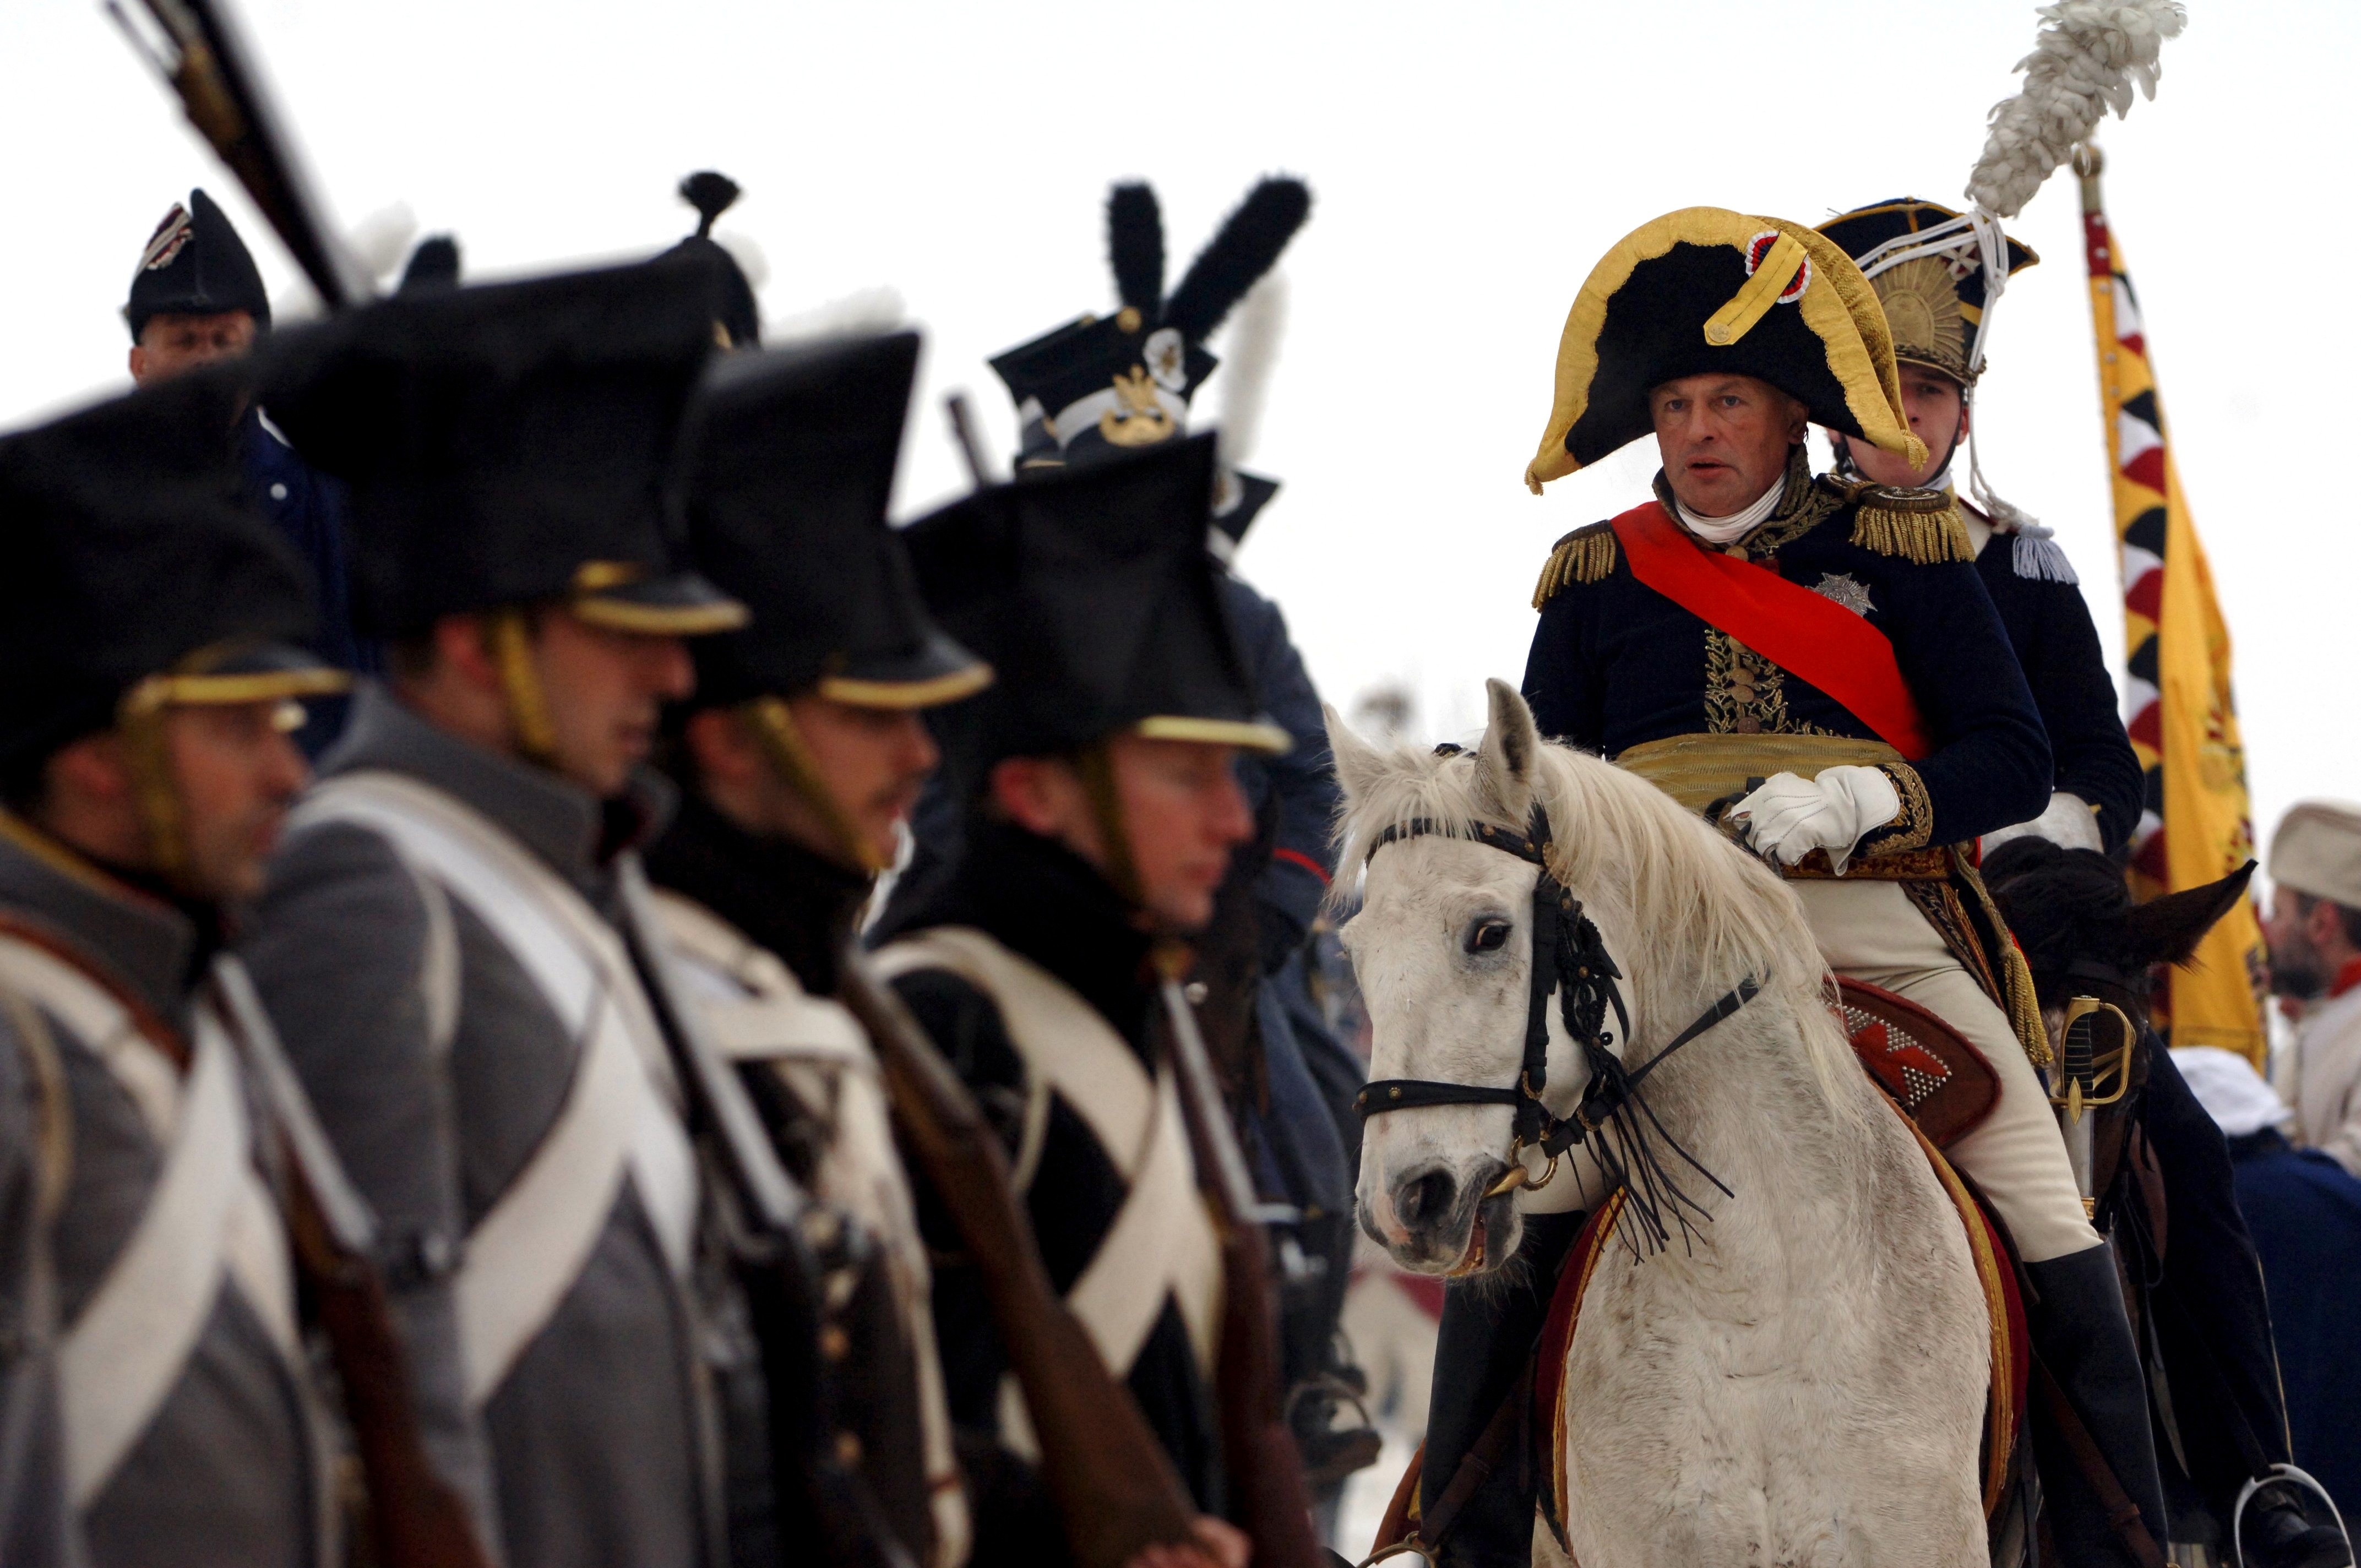 Oleg como um comandante francês na reprodução da Batalha de Austerlitz, na República Checa (Foto: Getty)